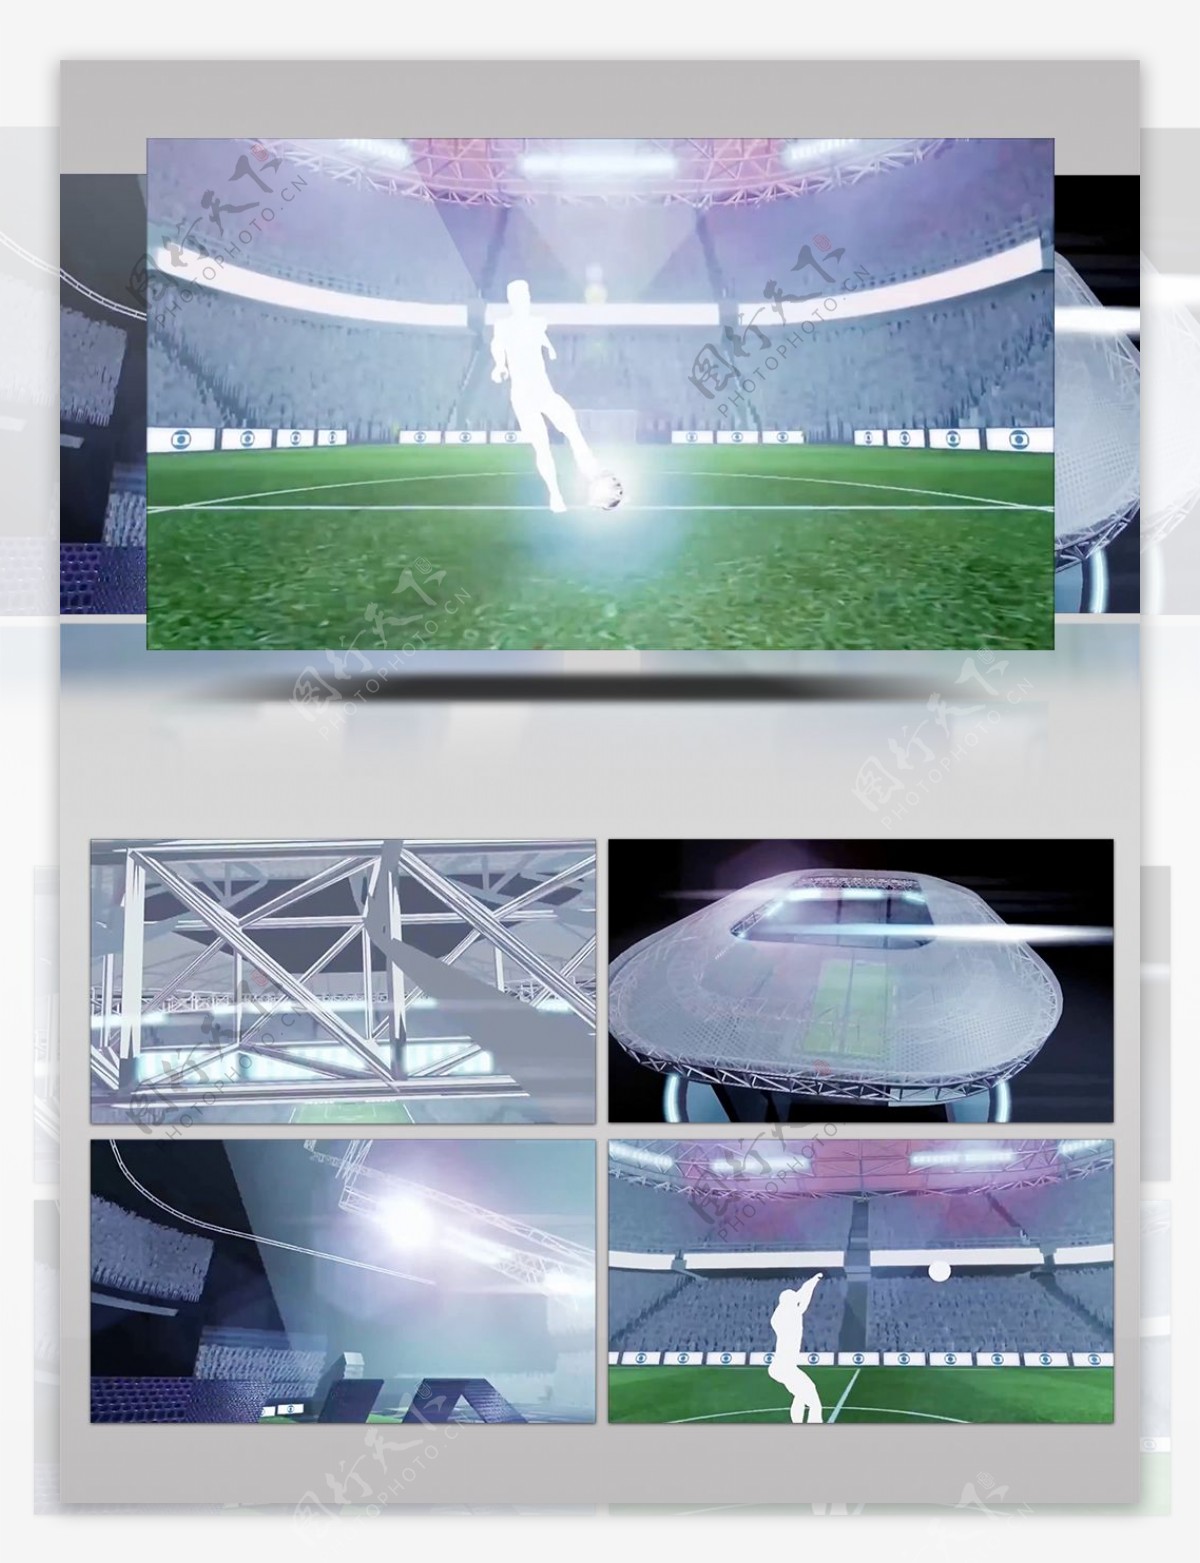 踢球及足球场所搭建动画模拟视频